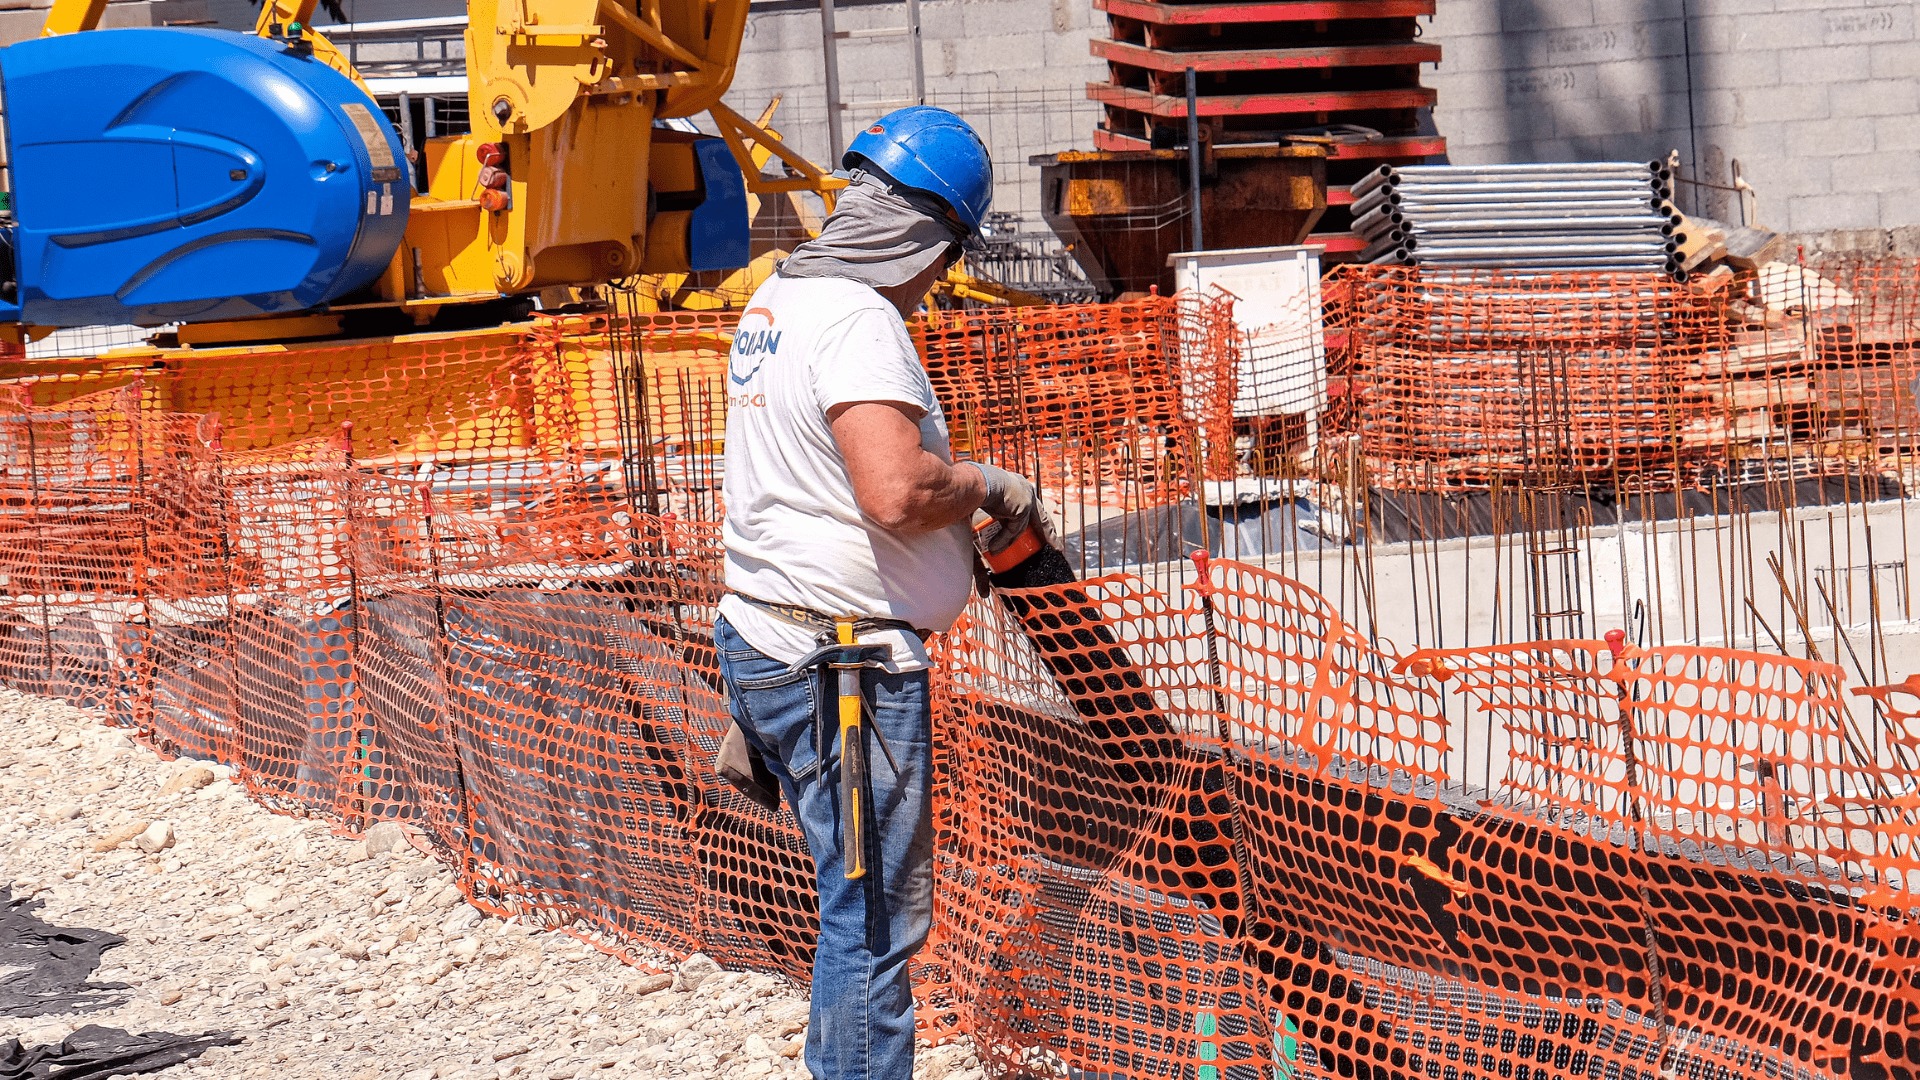  Canicule : sur les chantiers, les ouvriers agonisent